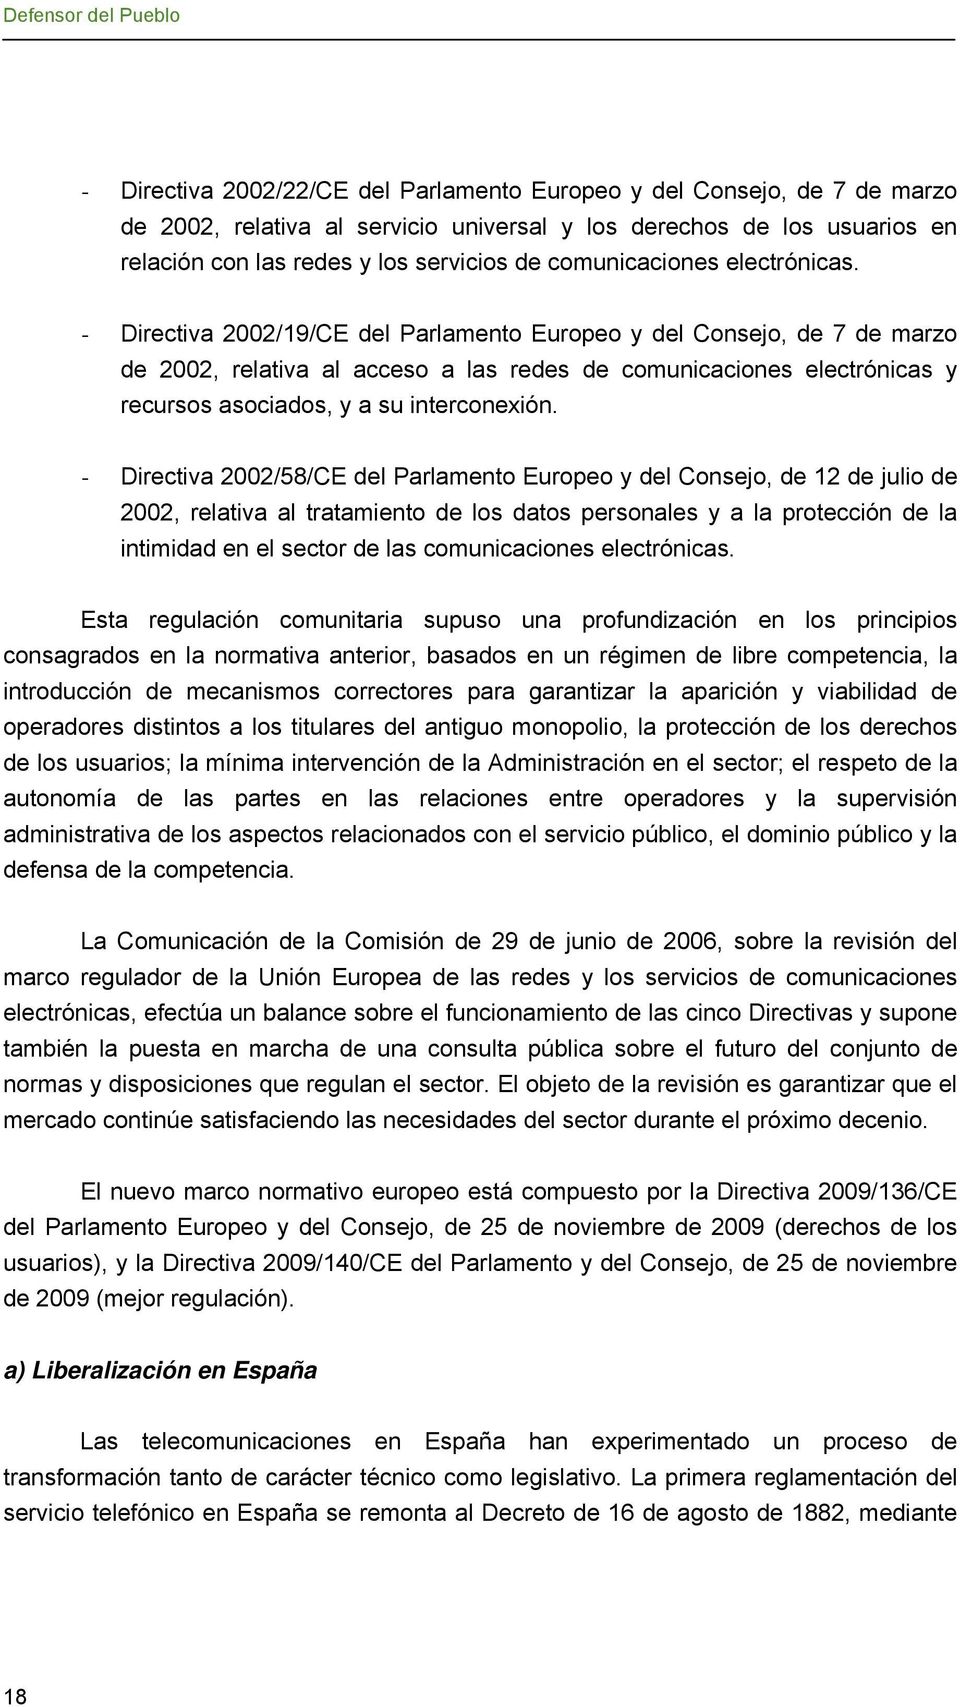 - Directiva 2002/19/CE del Parlamento Europeo y del Consejo, de 7 de marzo de 2002, relativa al acceso a las redes de comunicaciones electrónicas y recursos asociados, y a su interconexión.